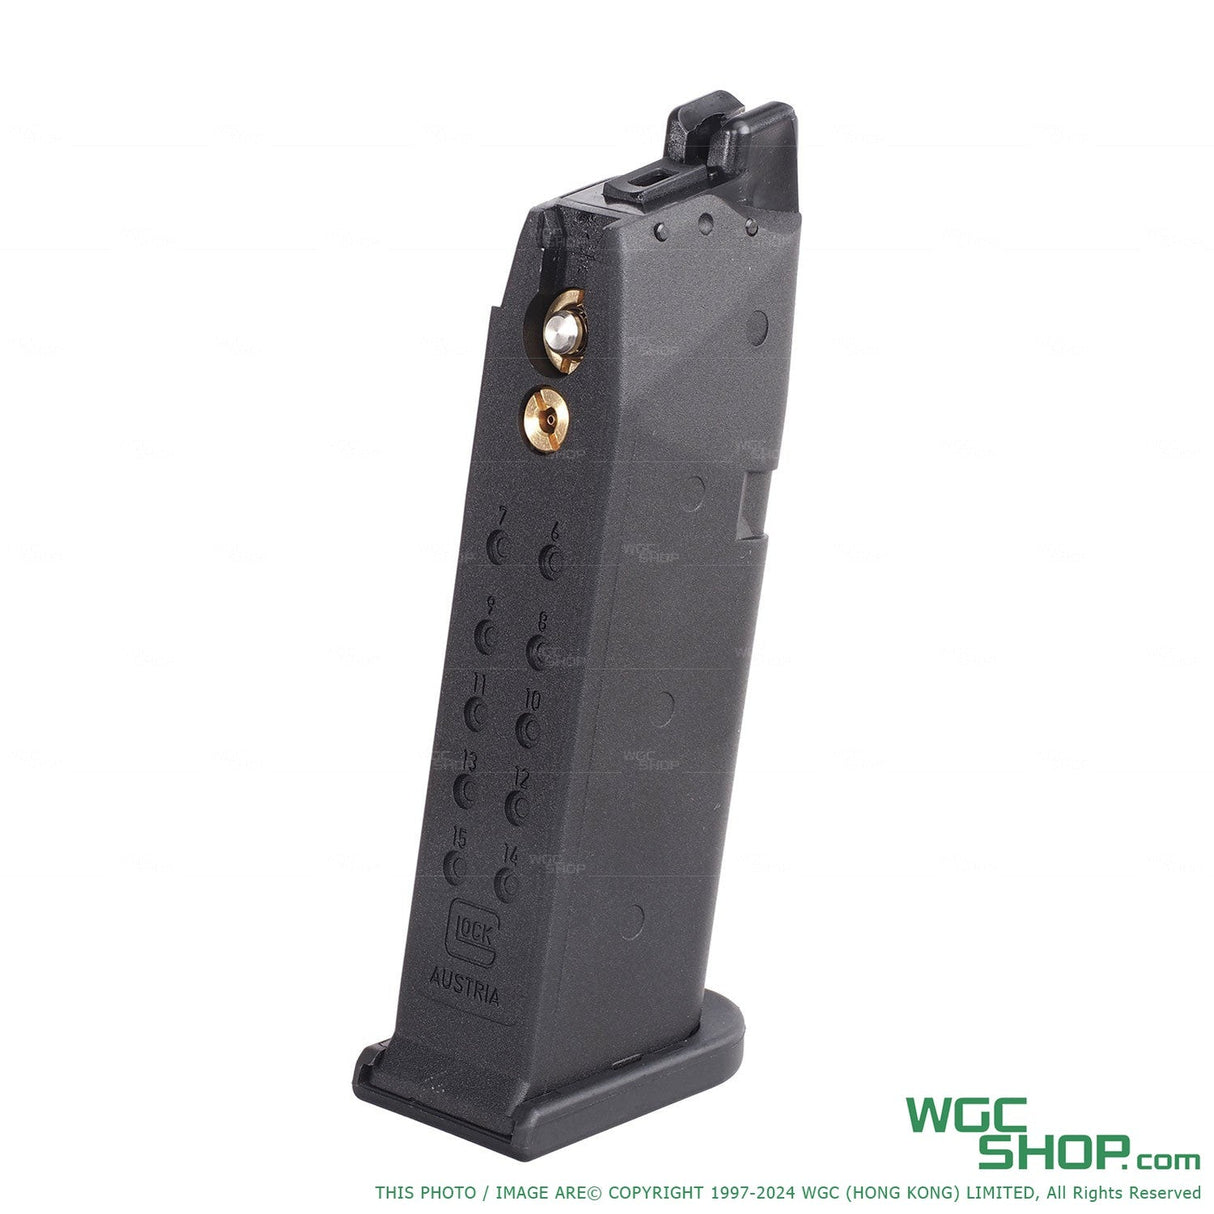 UMAREX / VFC Glock G19 Gen5 GBB Airsoft